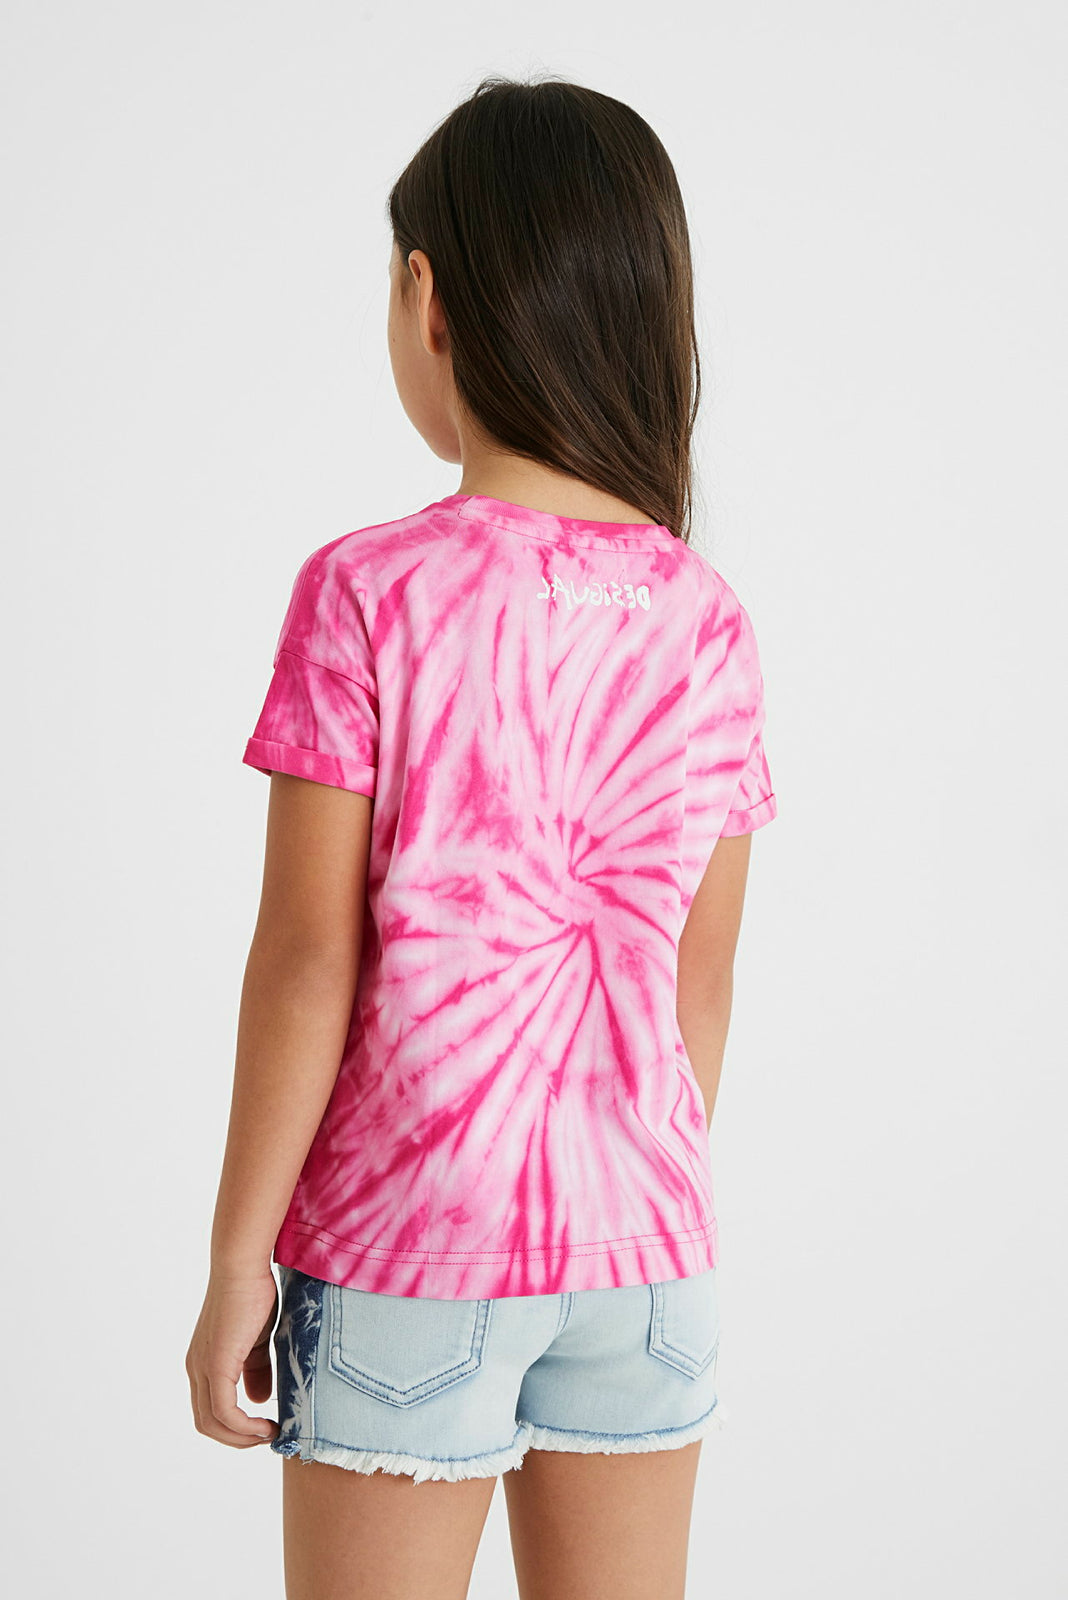 Mädchen T-Shirt TS Roterdam Pink